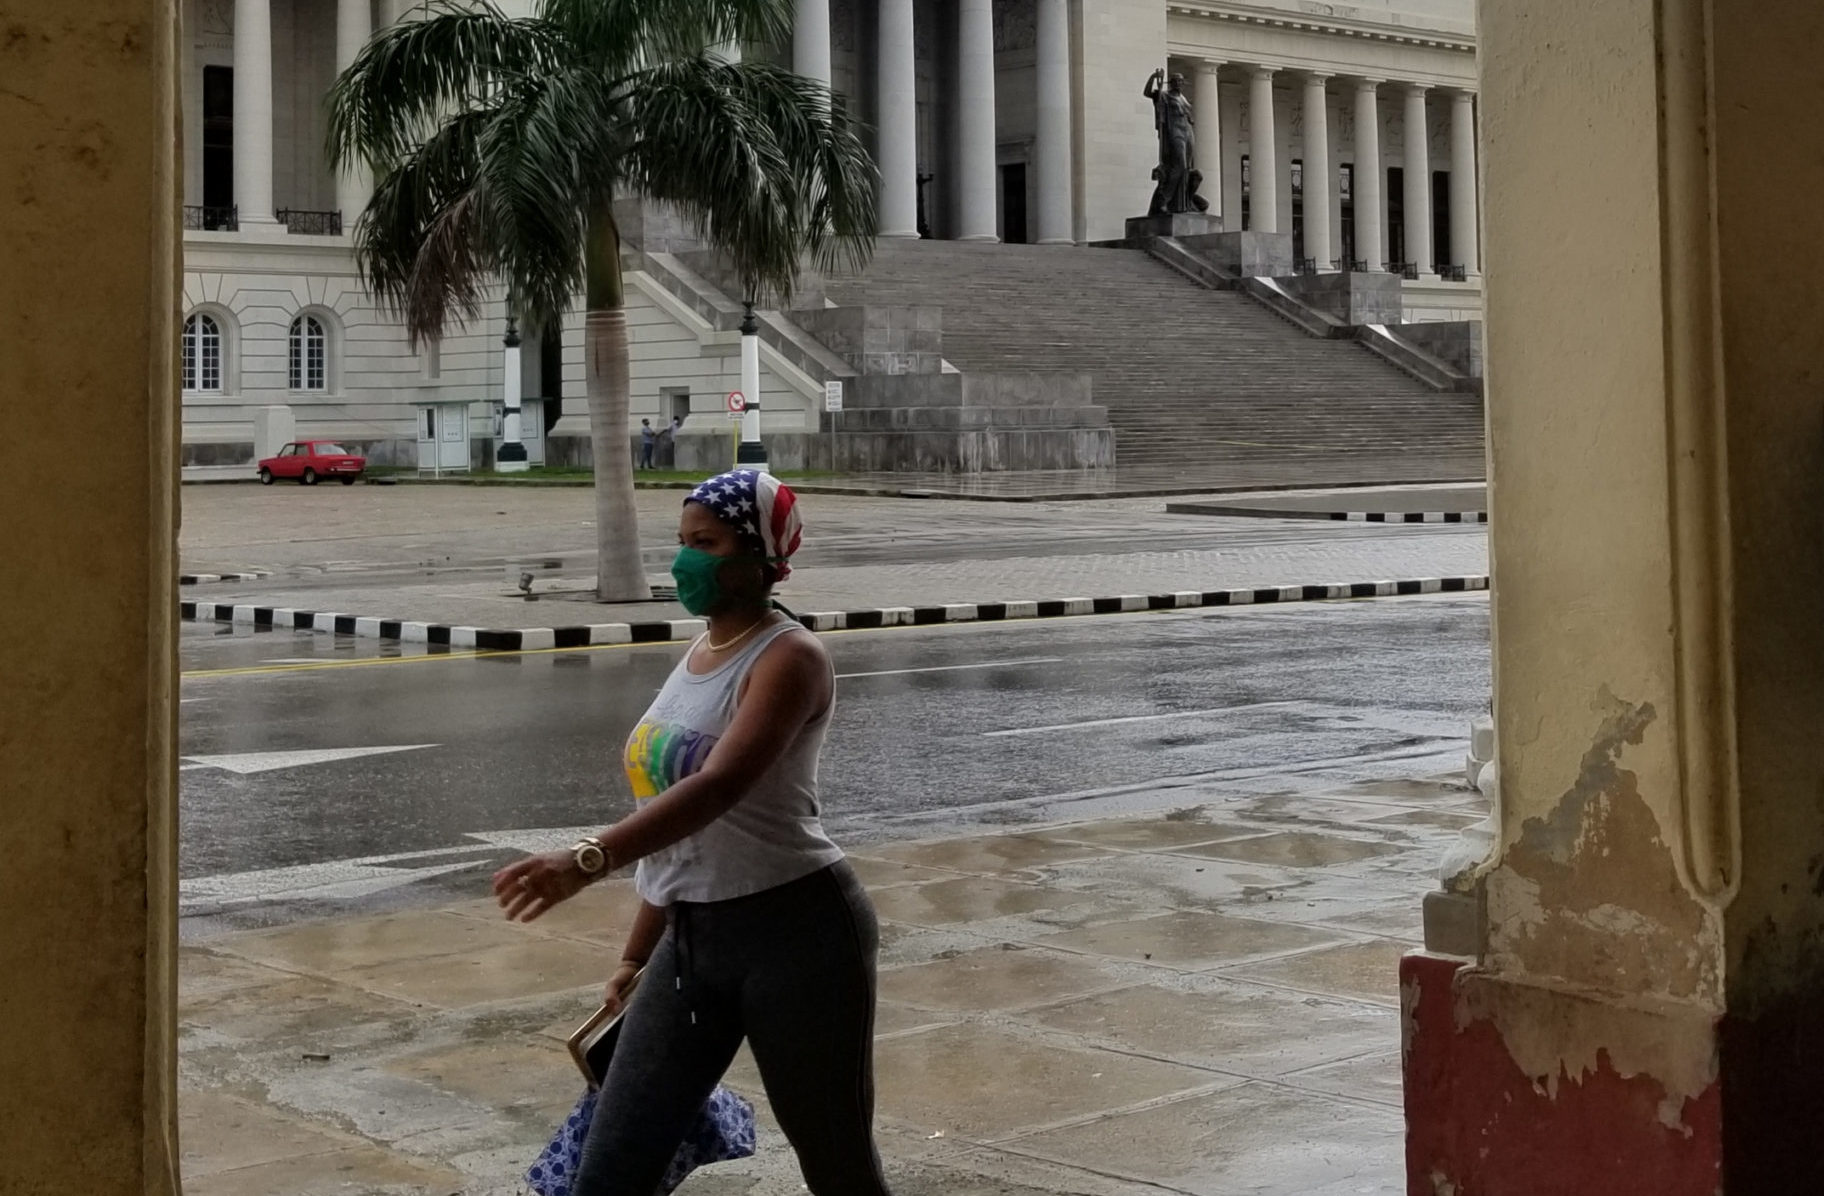 Titina, la mujer que montaba bicicleta y causó furor en La Habana